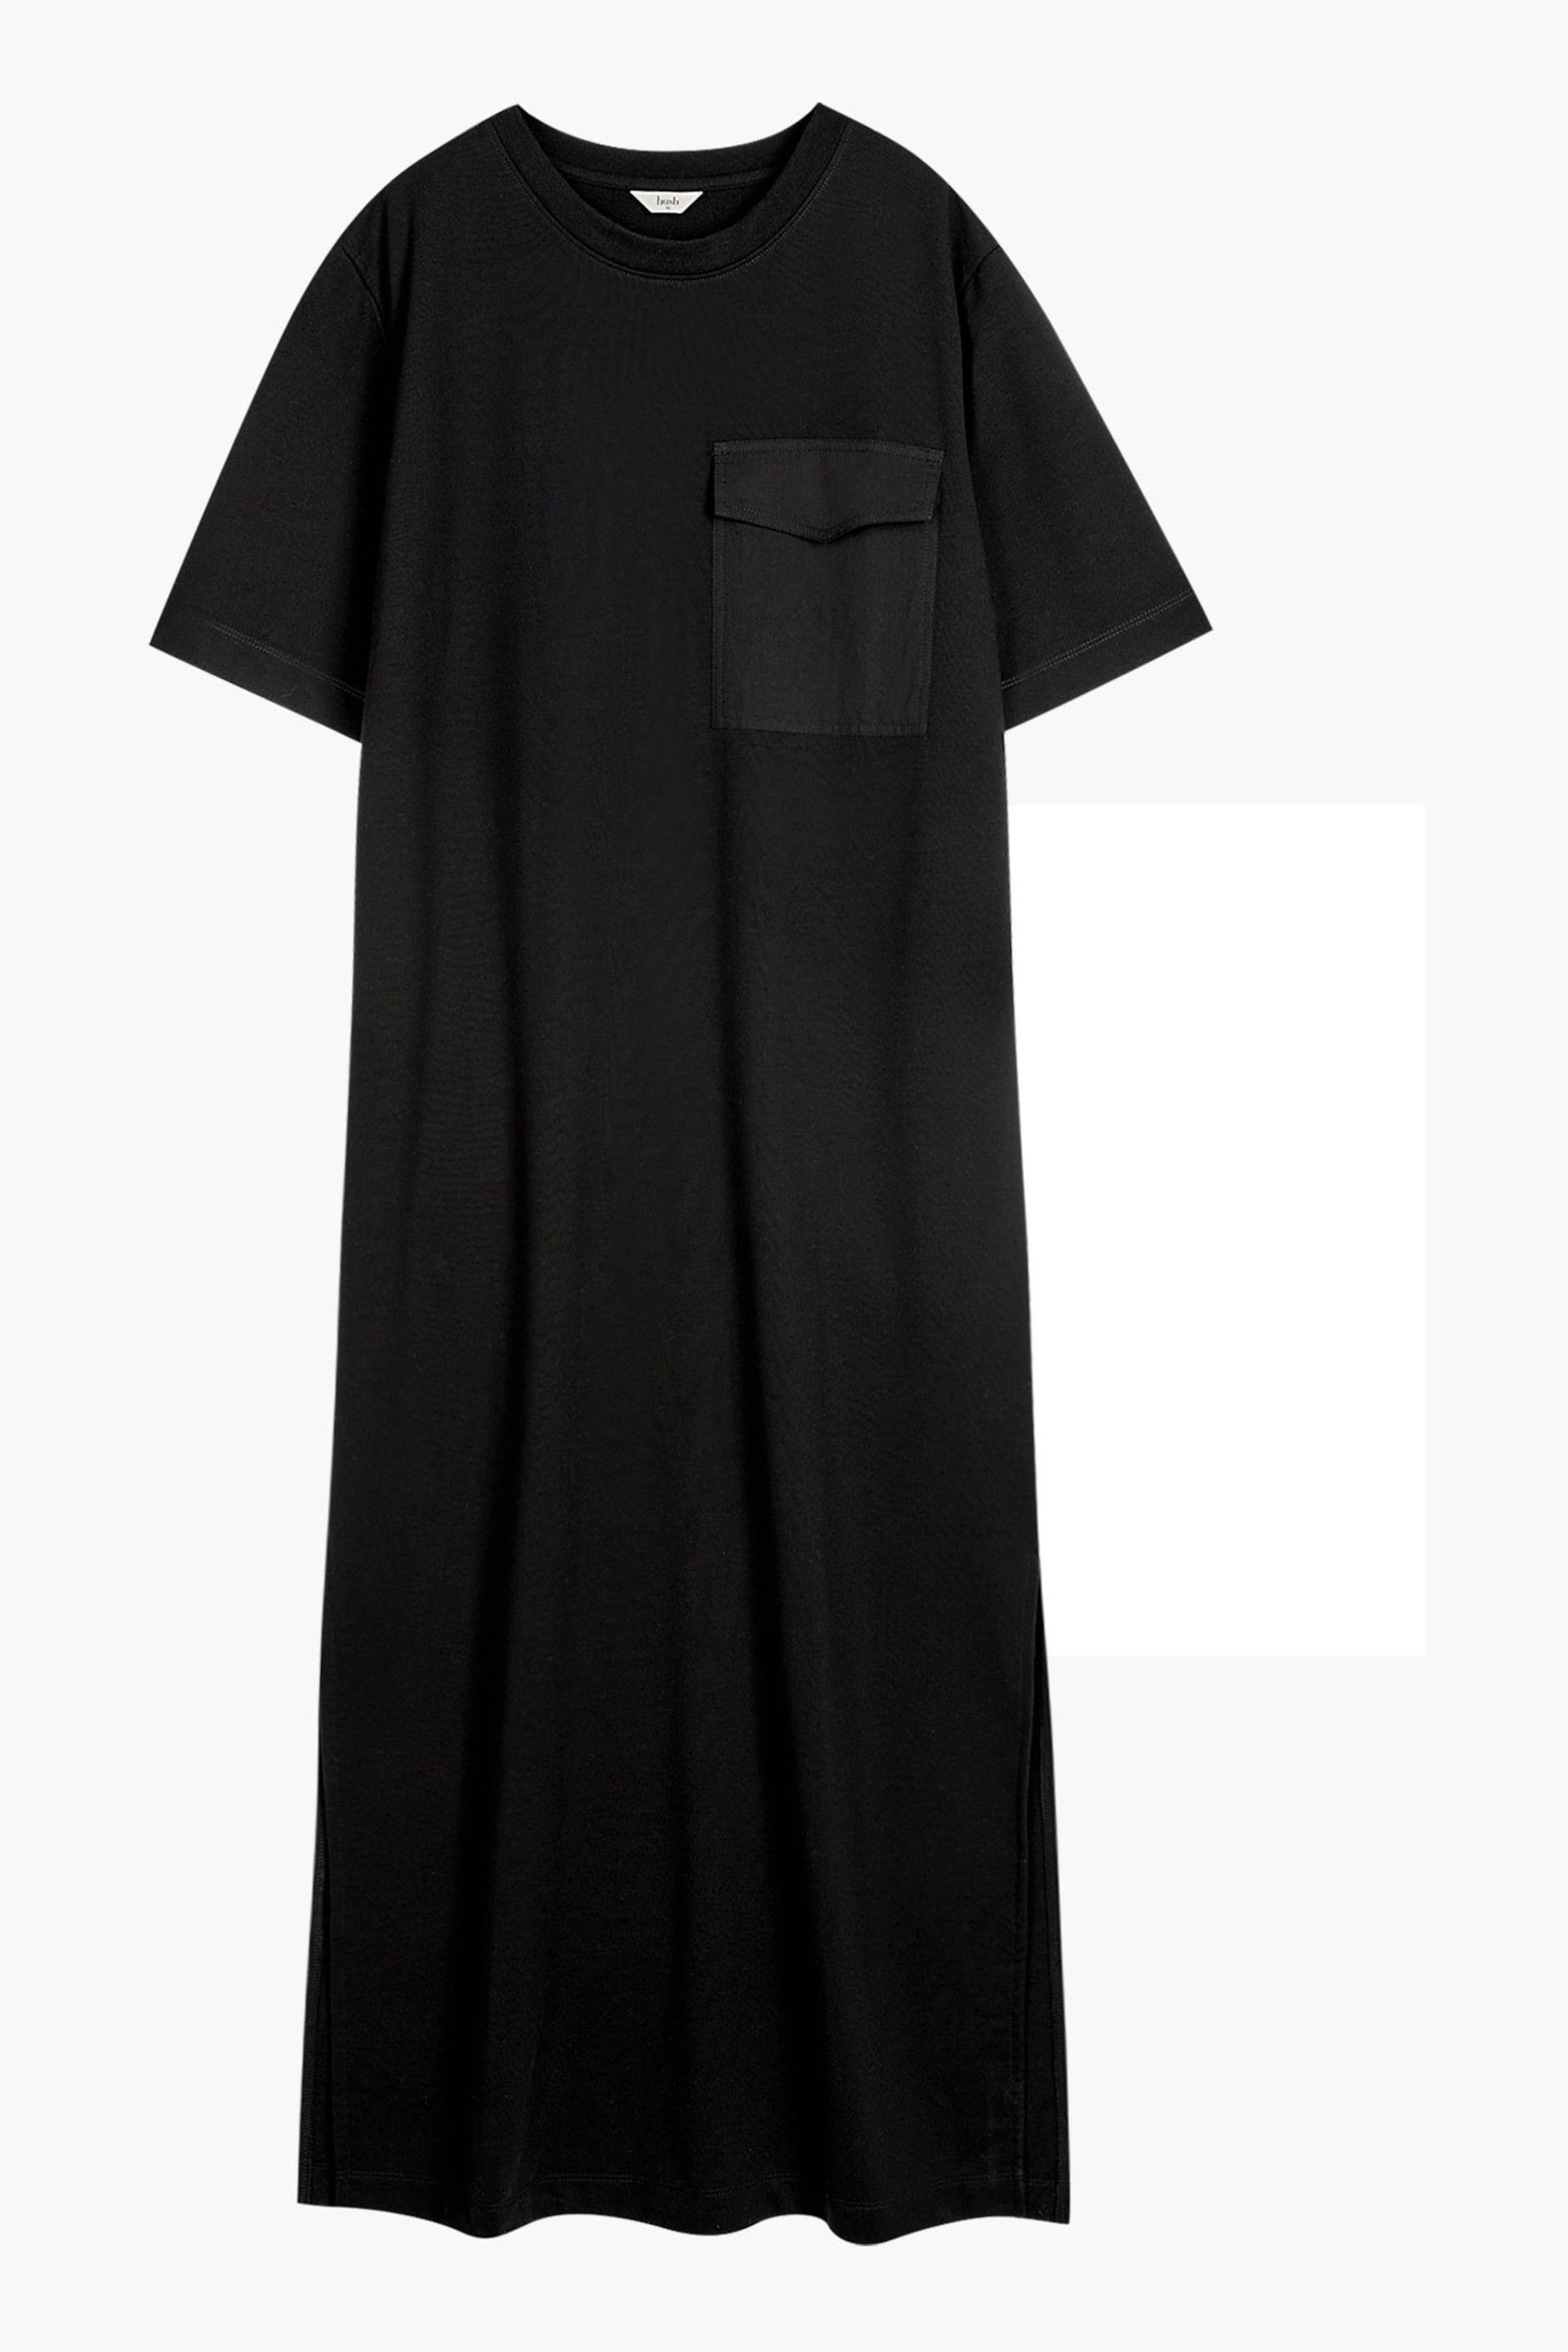 Hush Black Steph Midi T-shirt Dress - Image 5 of 5